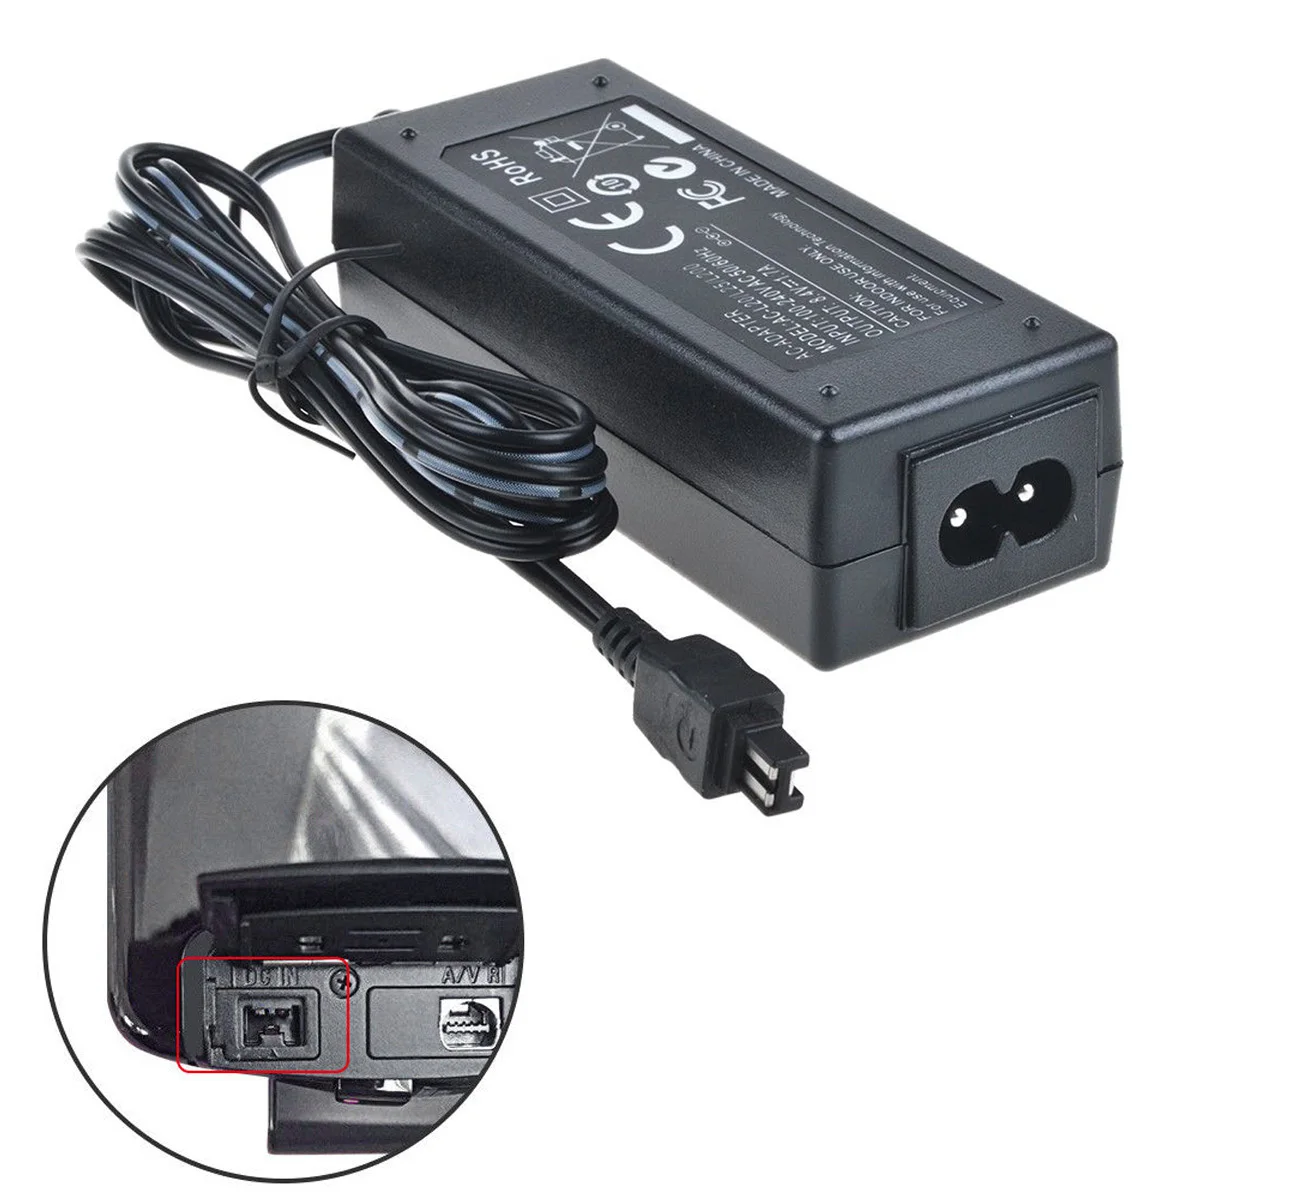 Sony Handycam hdr-pj760 videocámara fuente de alimentación AC adaptador de cable Cable De Cargador 